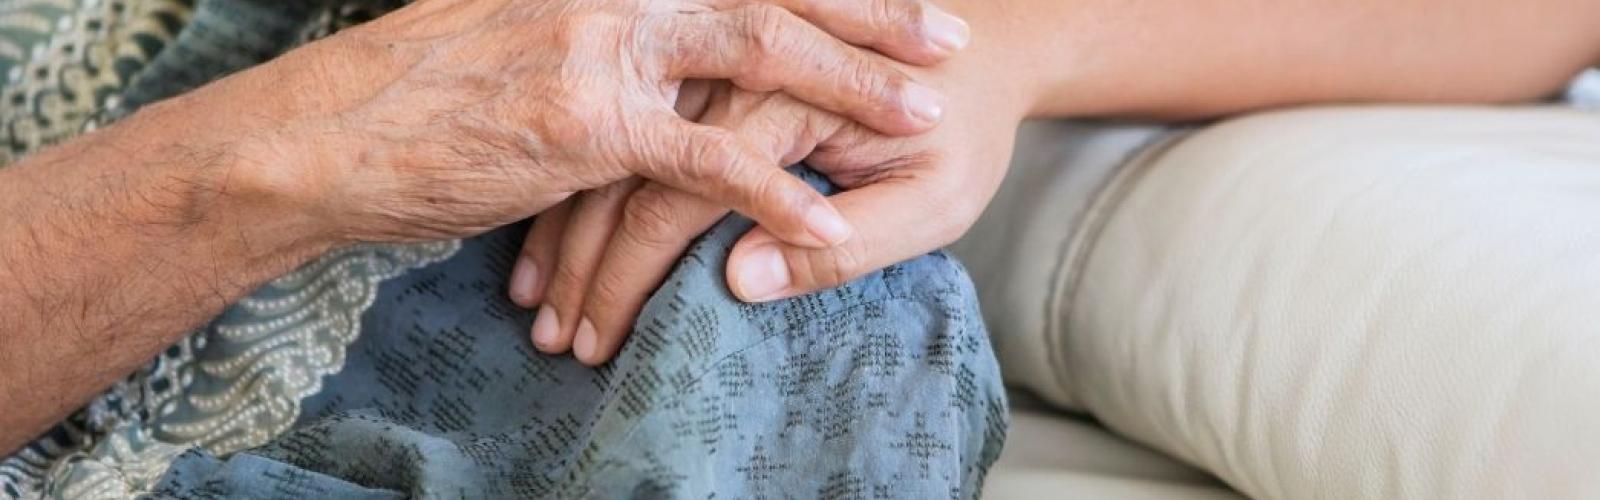 Aide à domicile pour personnes âgées : le guide complet des services possibles